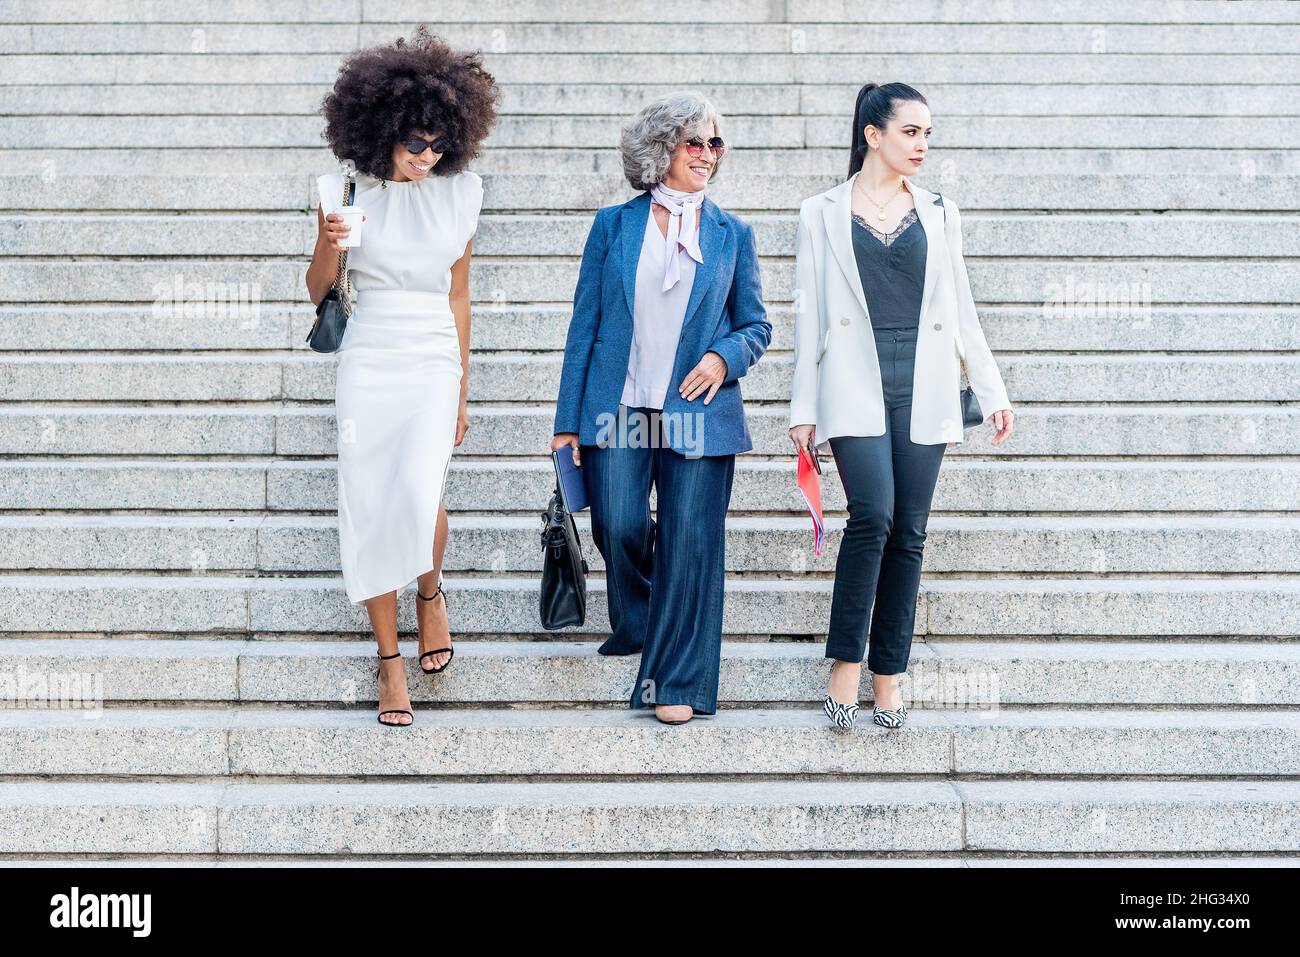 Weibliche leitende Angestellte gehen die Treppe hinunter Stockfoto